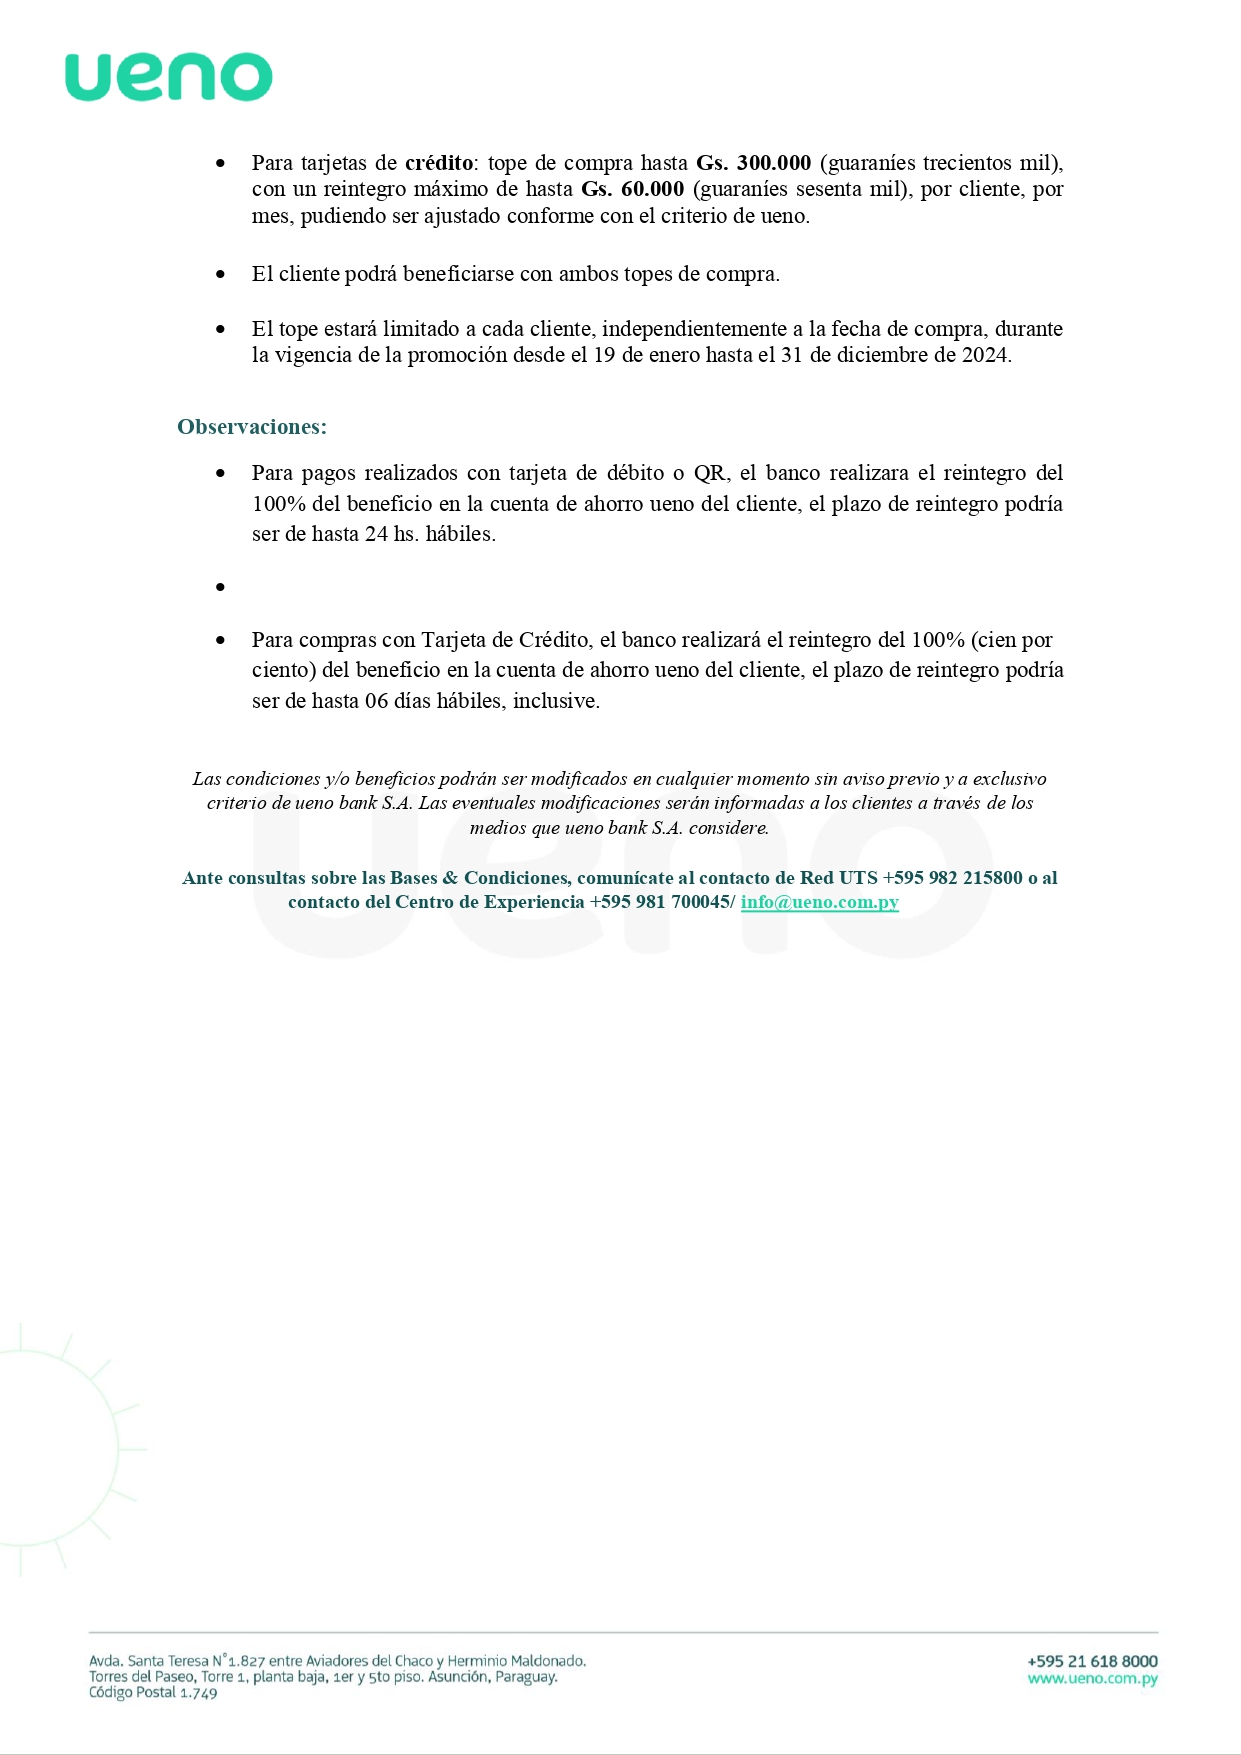 ByC - Promo Compra de entradas Guarani (1)_page-0002.jpg